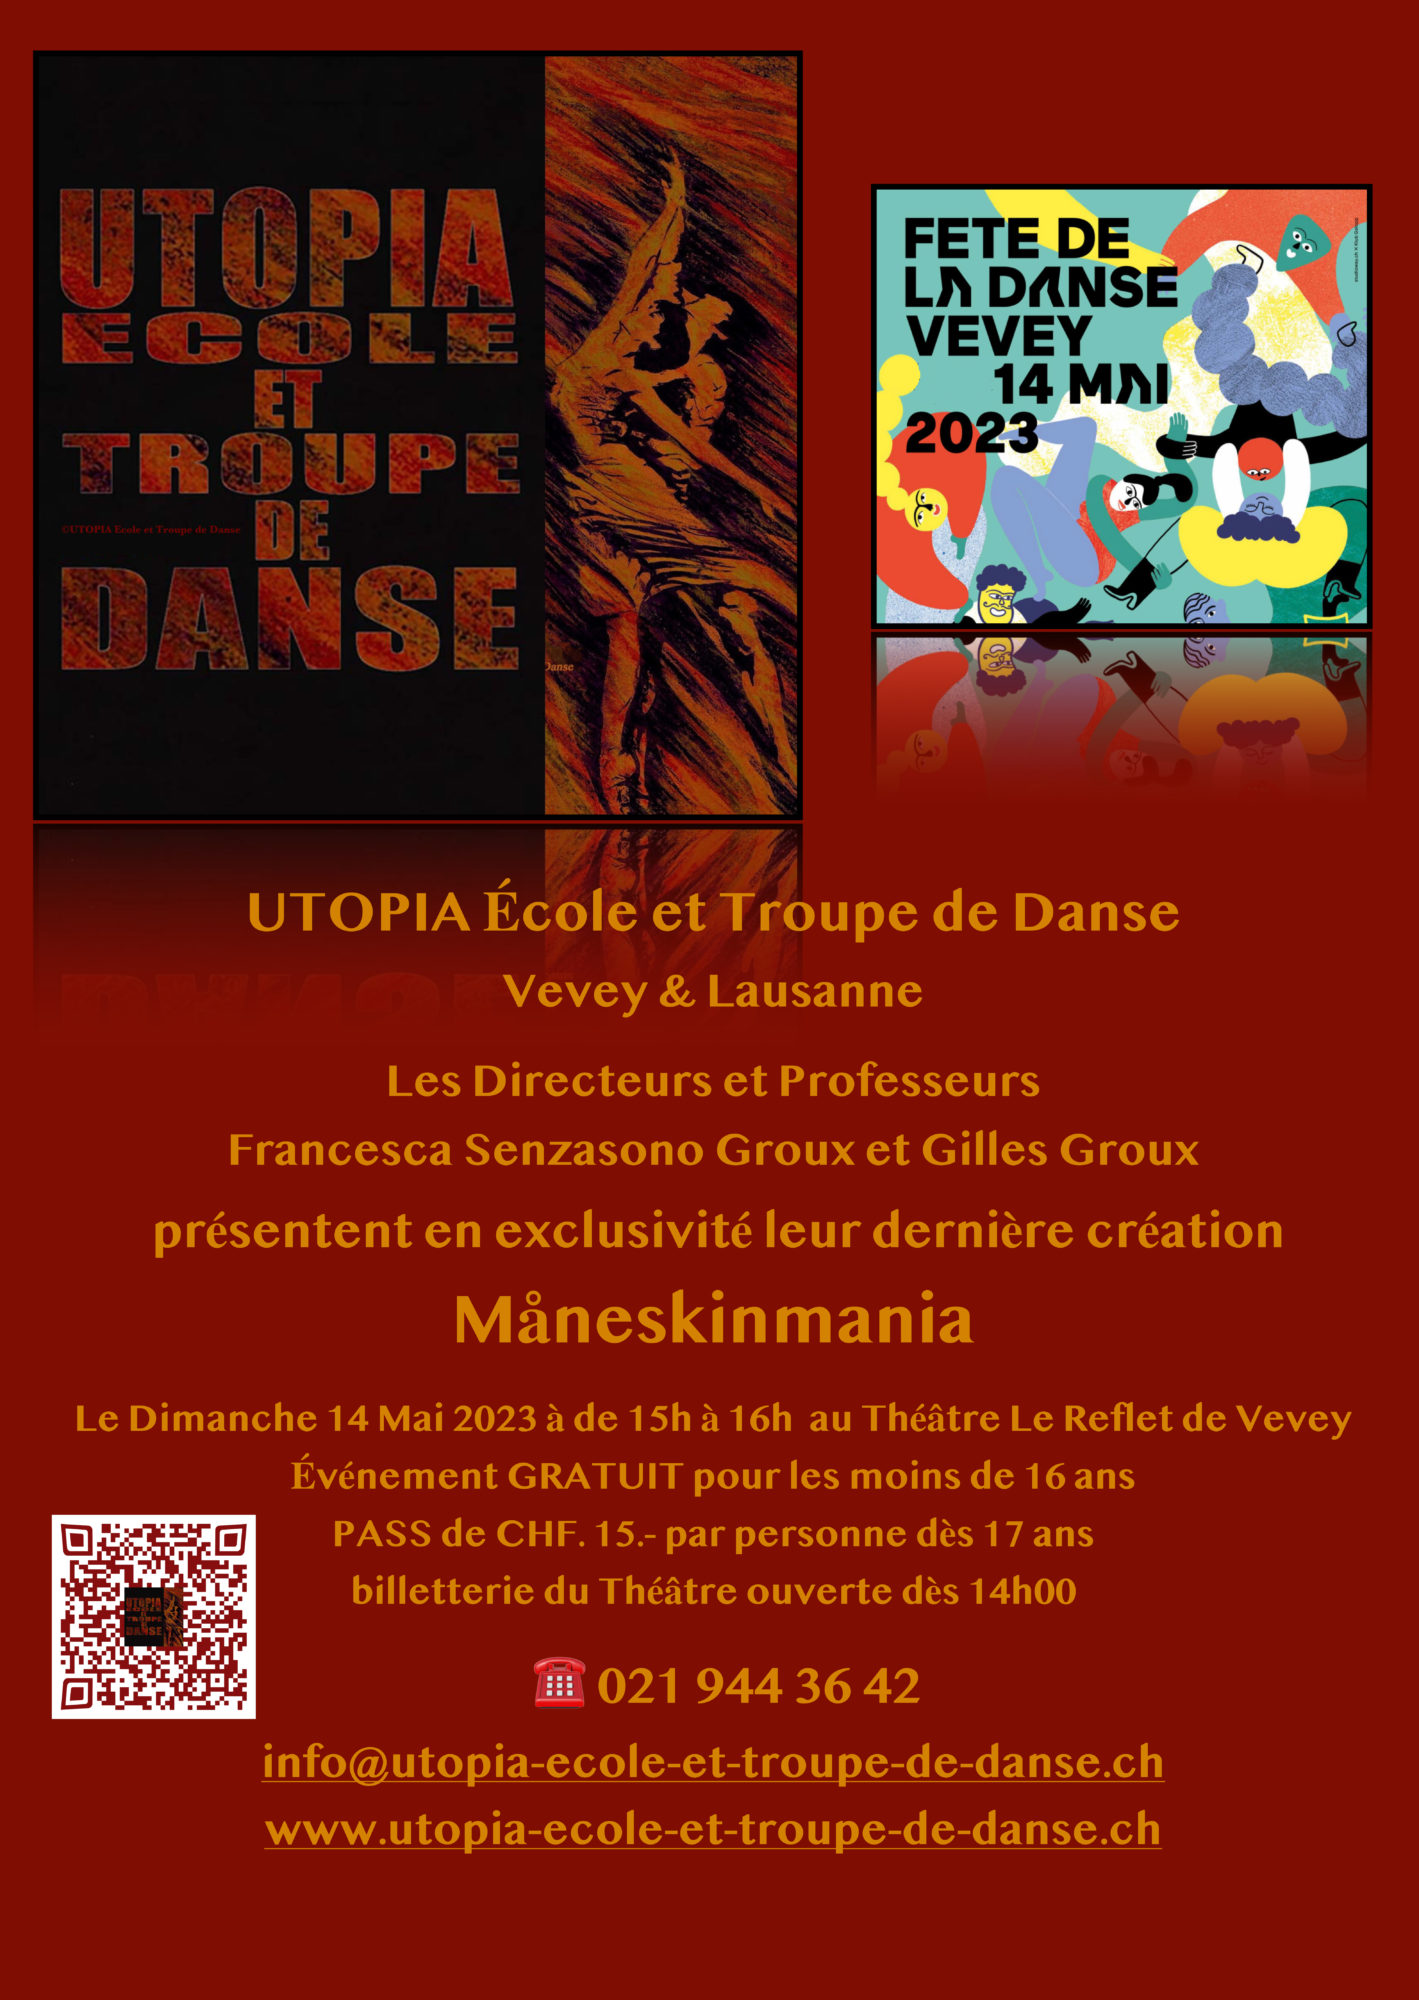 ©UTOPIA École et Troupe de Danse & ©UTOPIA Projet Danse SSU Fête de la danse de Vevey le 14 mai 2023